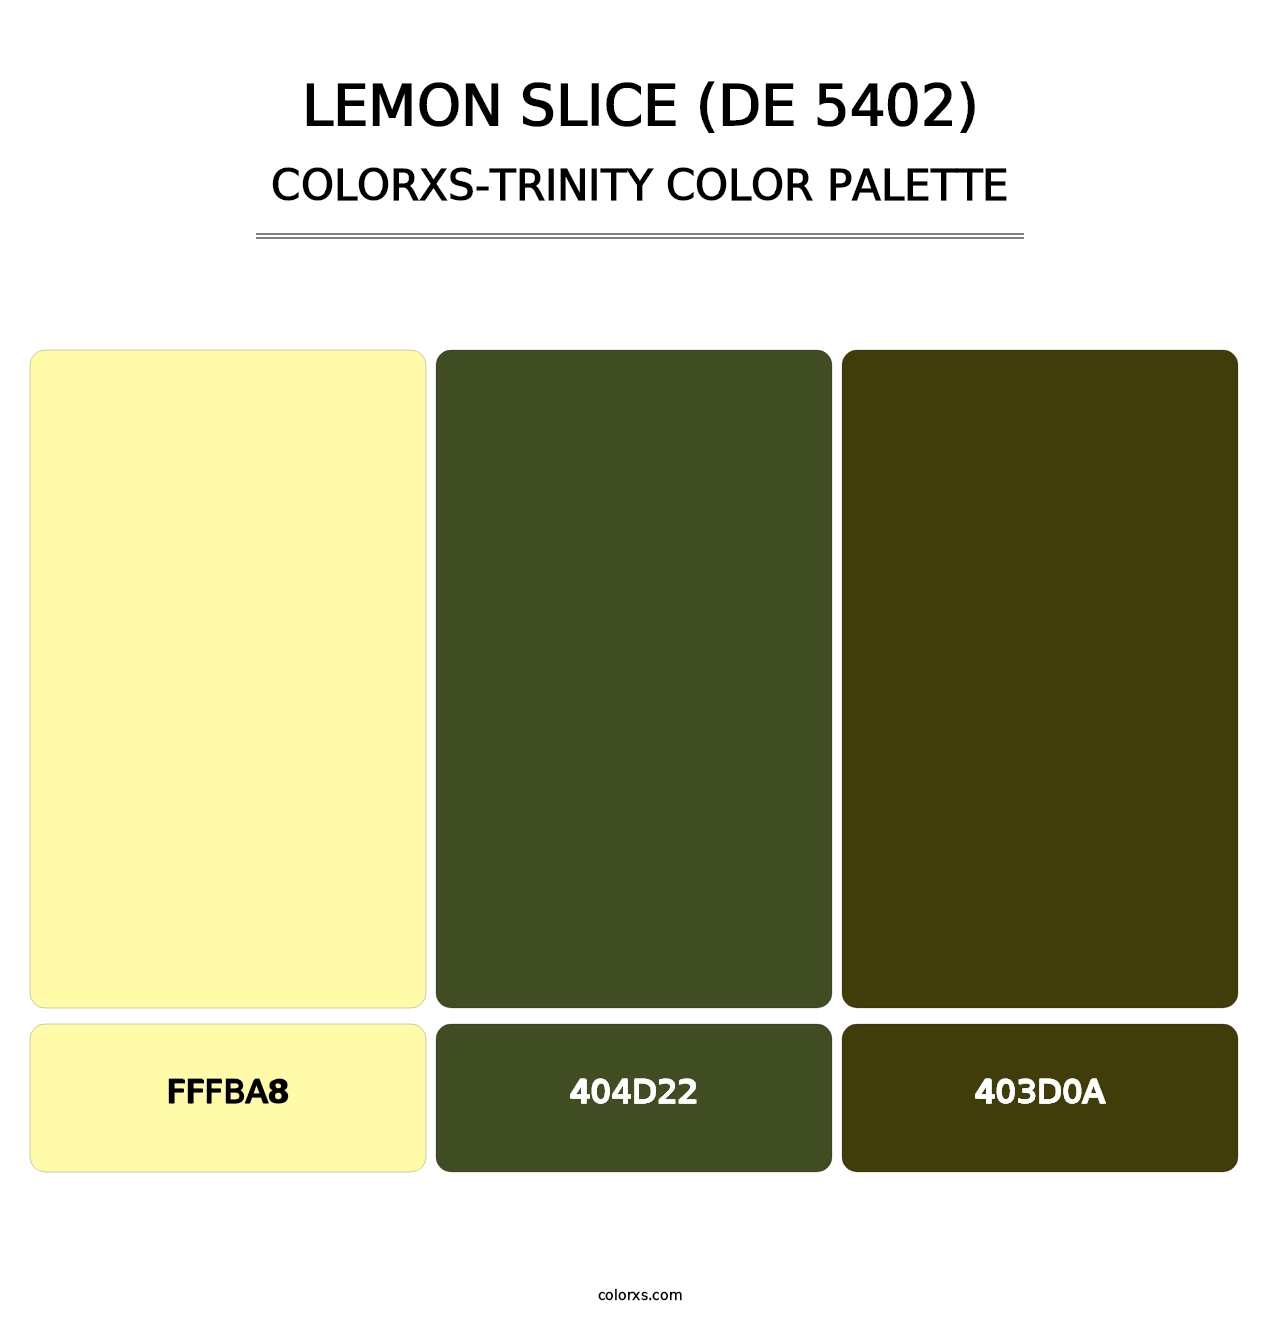 Lemon Slice (DE 5402) - Colorxs Trinity Palette